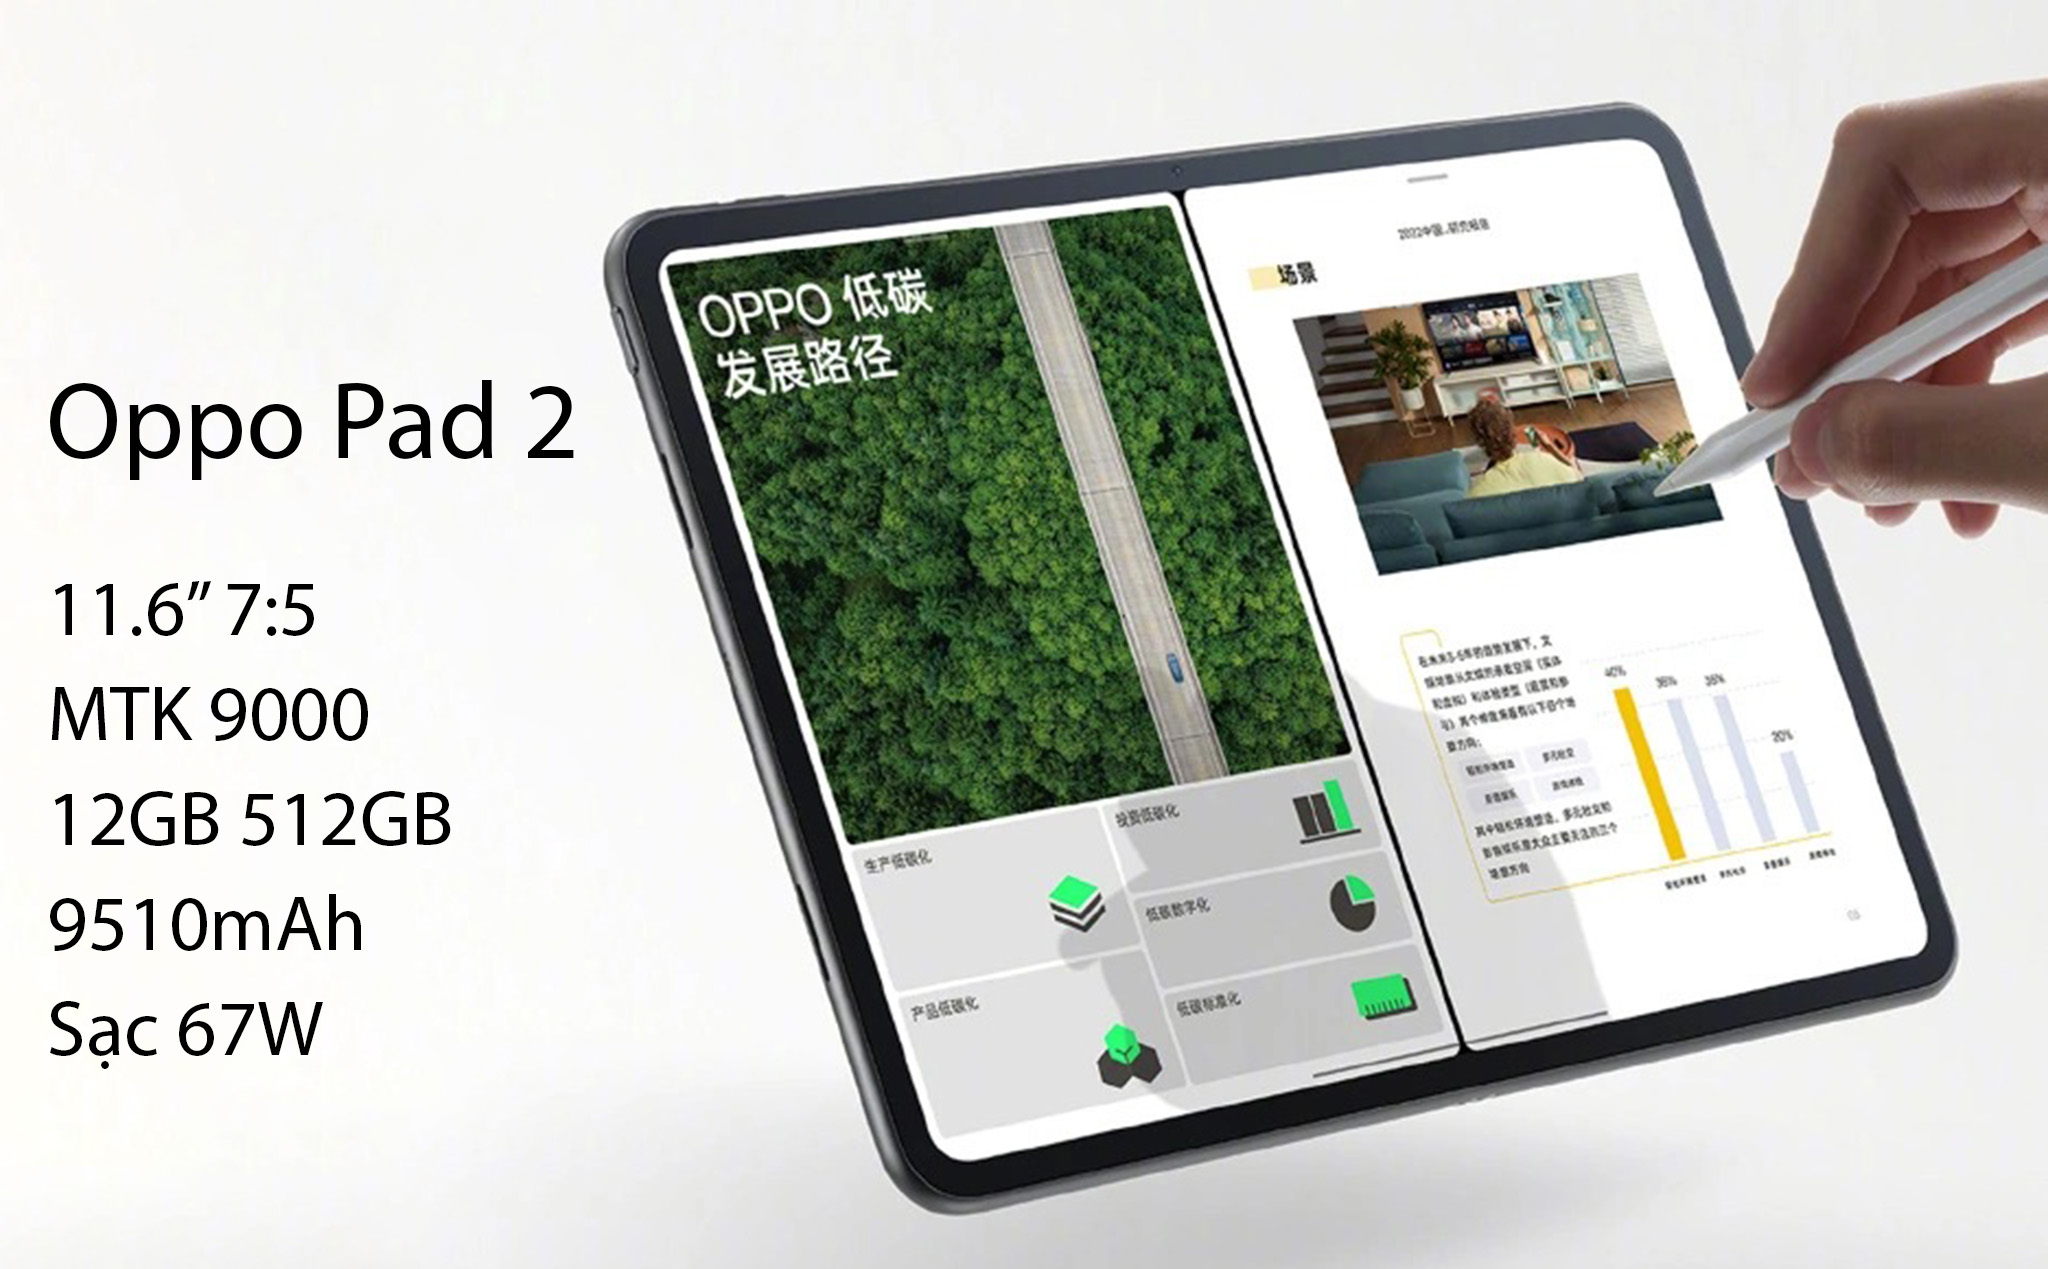 OPPO Pad 2 là OnePlus Pad đổi tên với màn hình 7:5, liệu đây có phải là xu hướng cho tablet Android?